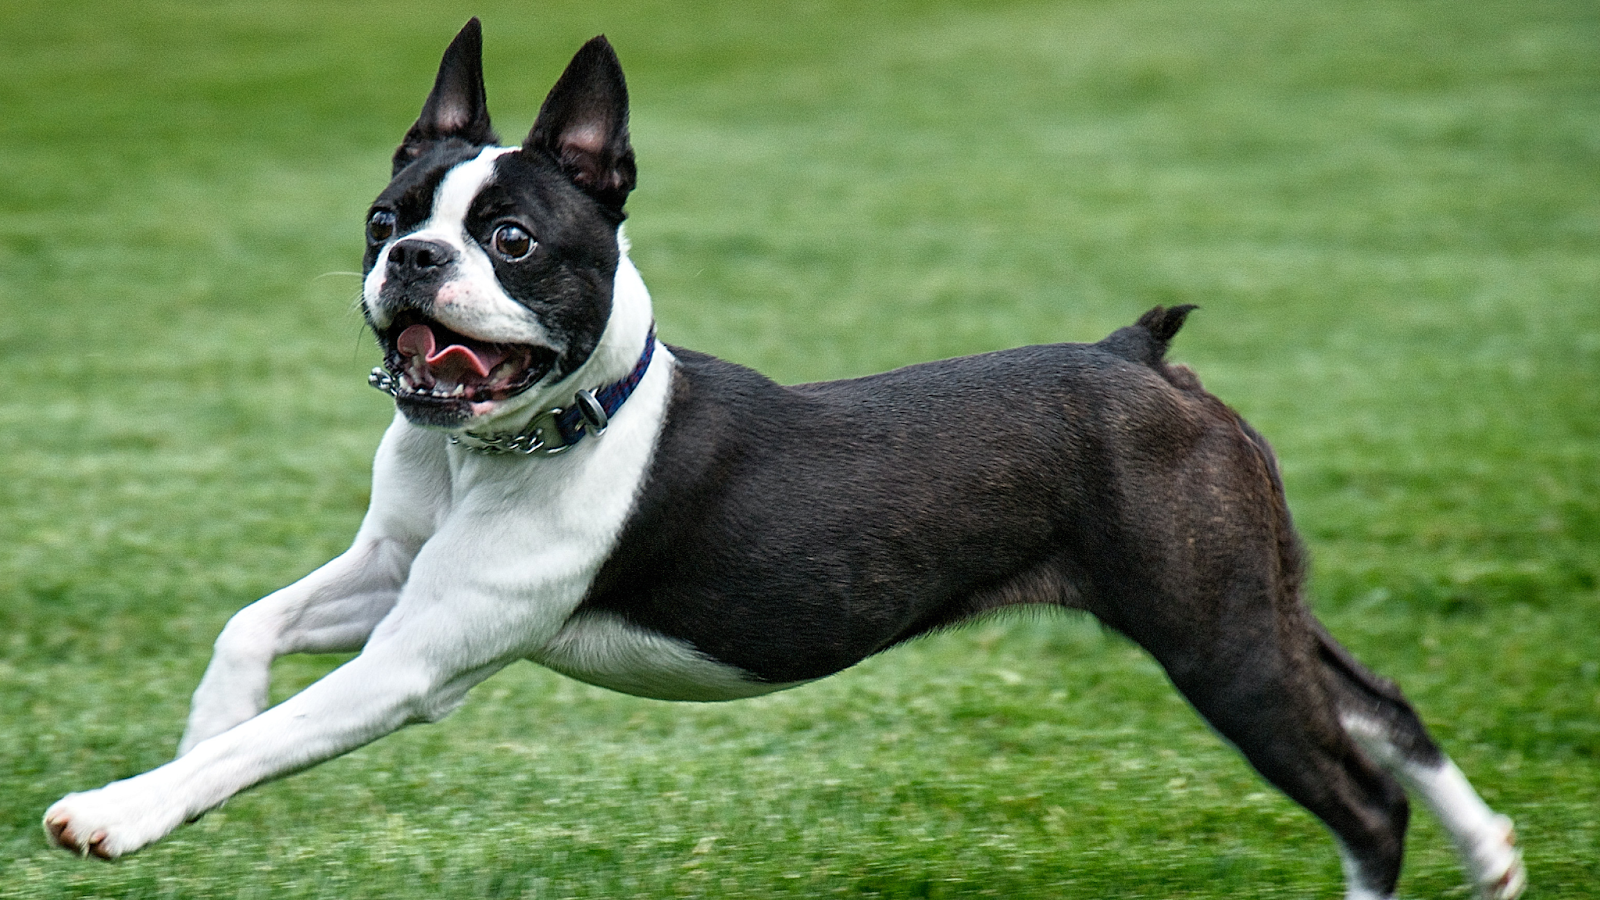 Exercising Boston Terrier dog